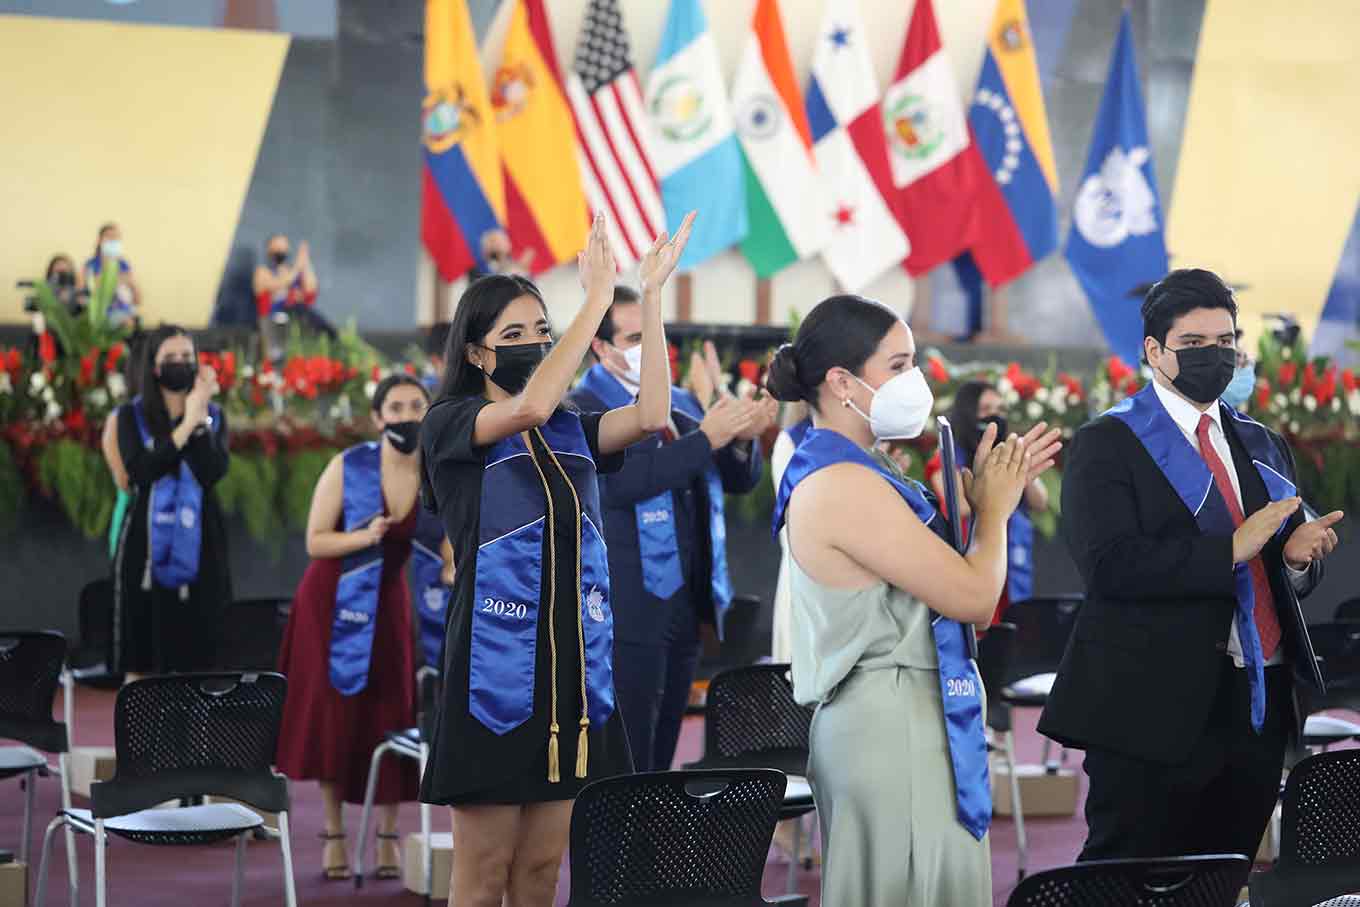 Viven graduación presencial en Tec, campus Guadalajara.